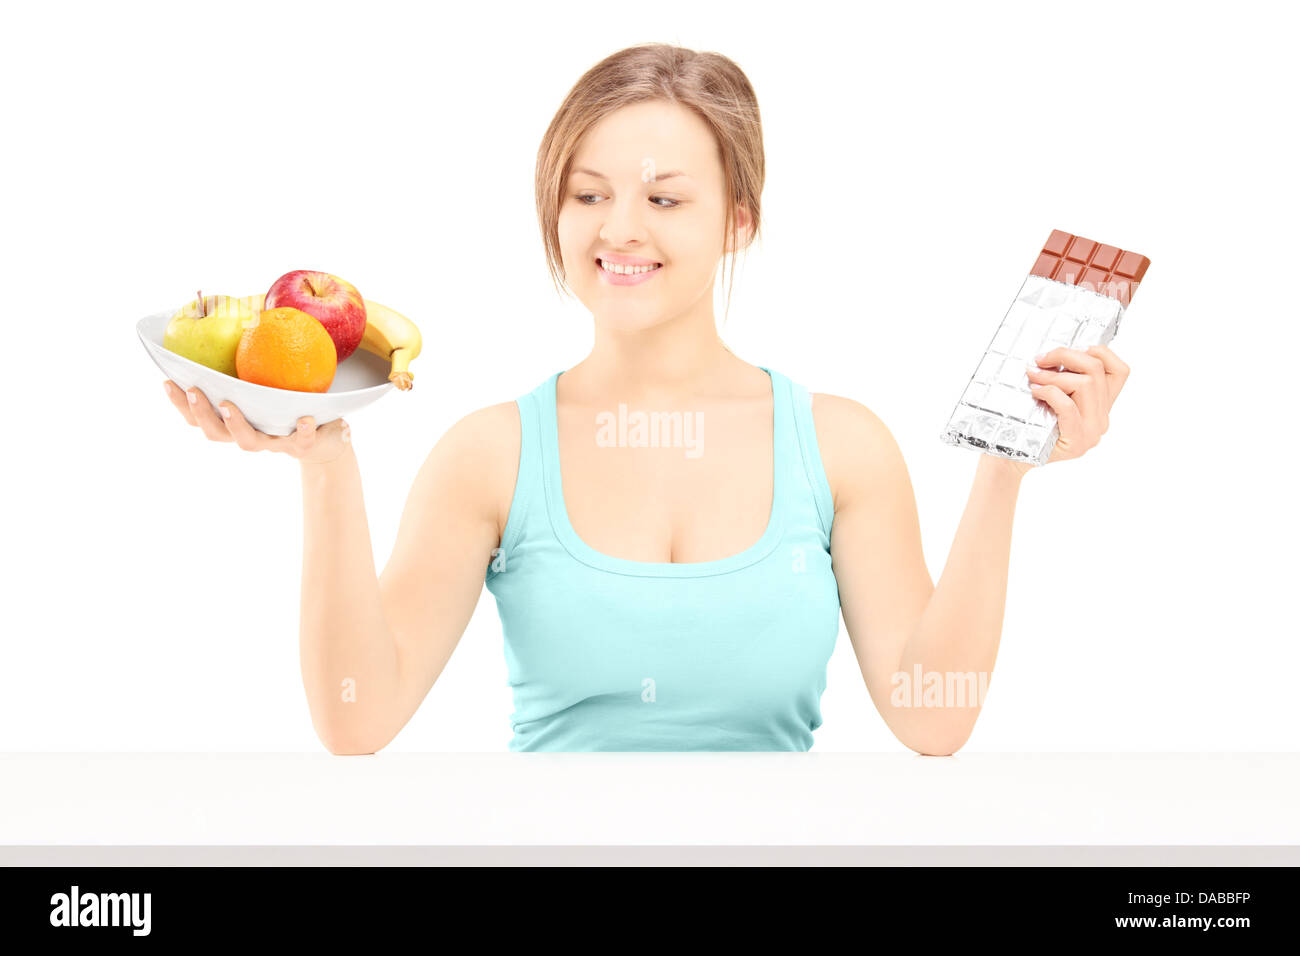 Junge Frau hält eine Schale mit frischem Obst und Schokolade, versuchen zu entscheiden, was man zu essen Stockfoto